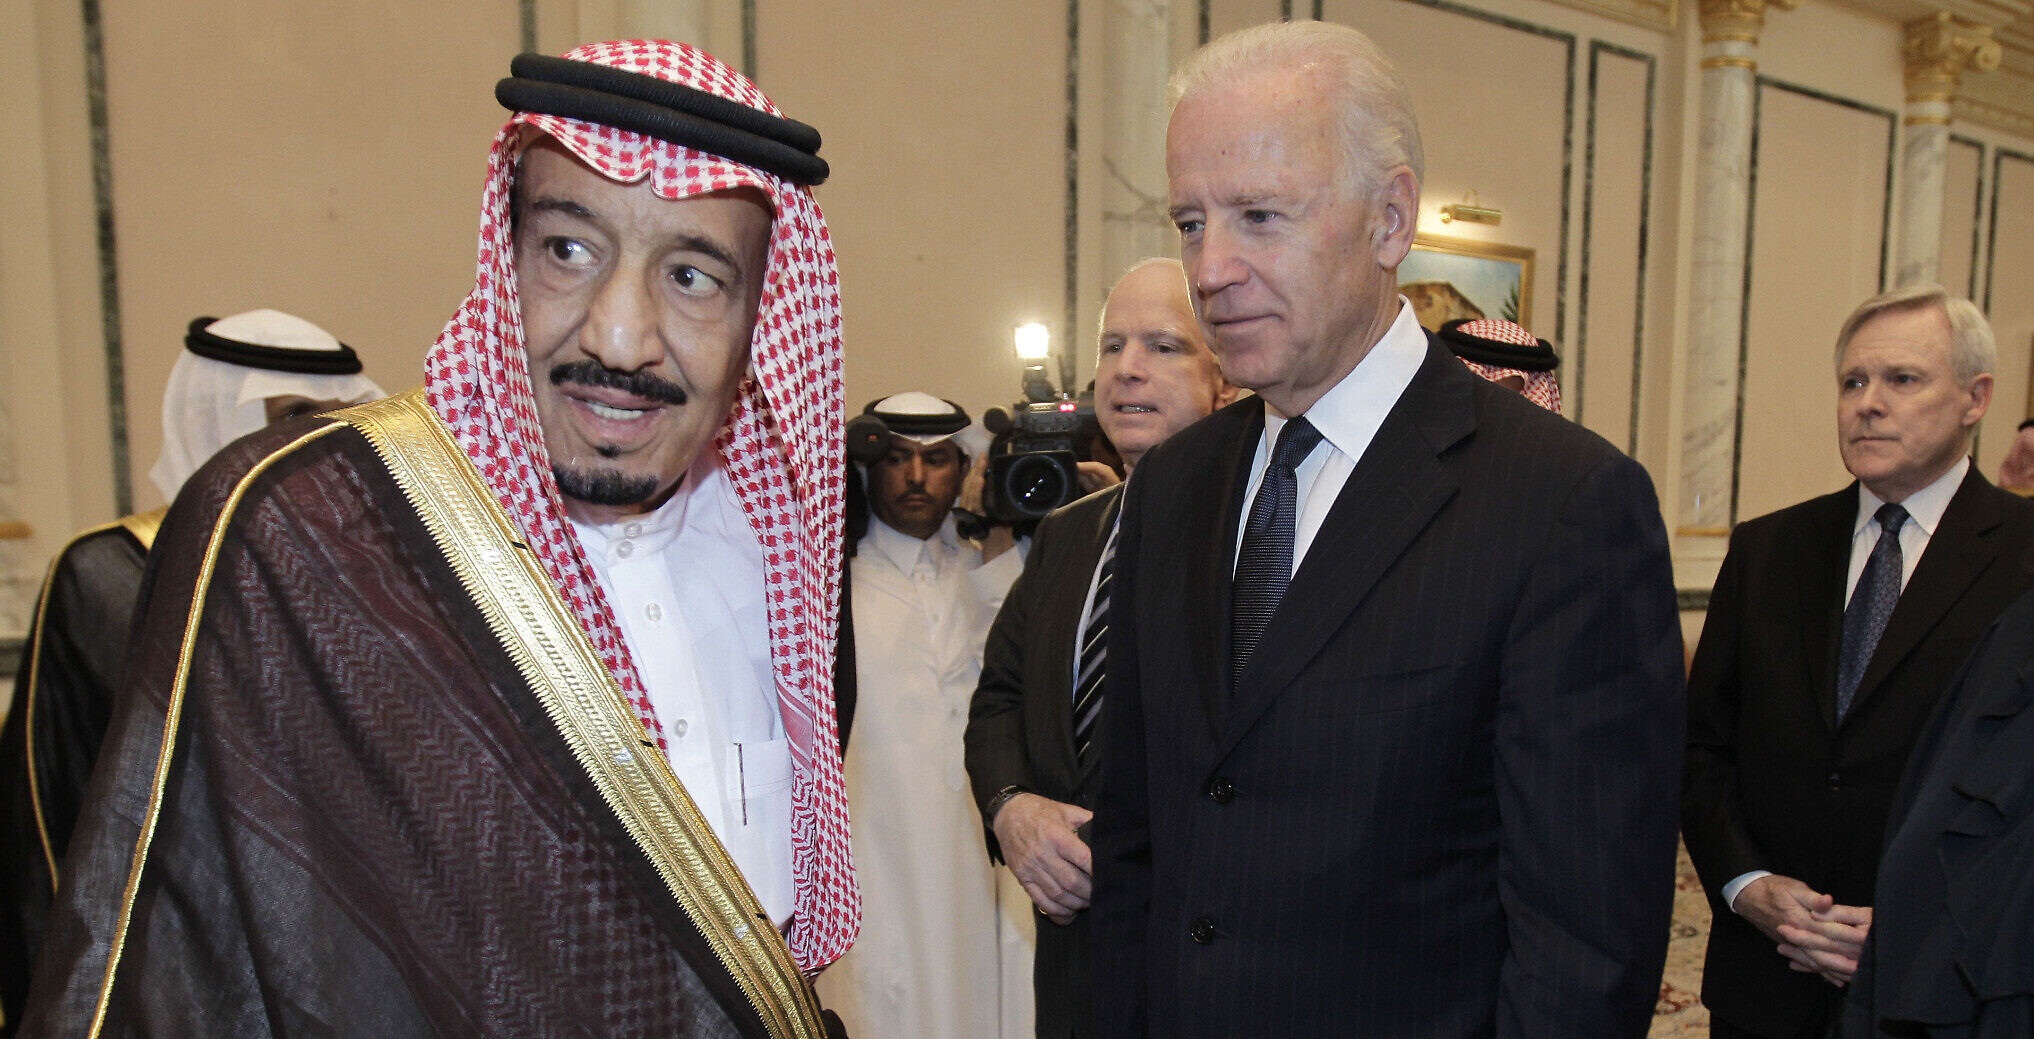 ΗΠΑ κατά Σαουδικής Αραβίας: Ο διάδοχος πρίγκιπας Μοχάμεντ Μπιν Σαλμάν ενέκρινε τη δολοφονία Κασόγκι